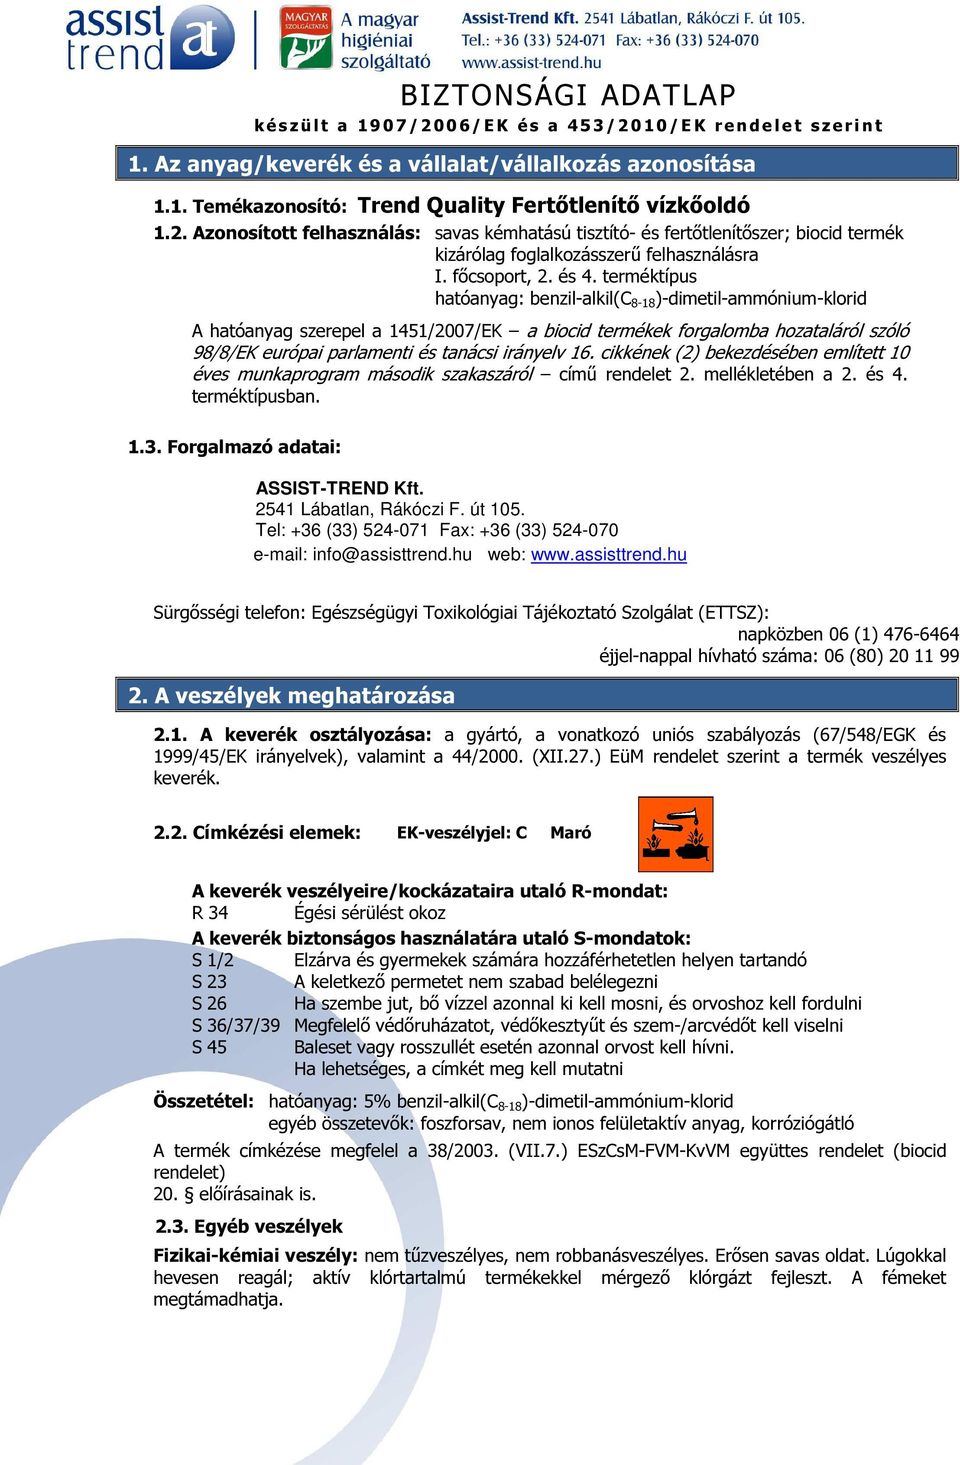 terméktípus hatóanyag: benzil-alkil(c 8-18 )-dimetil-ammónium-klorid A hatóanyag szerepel a 1451/2007/EK a biocid termékek forgalomba hozataláról szóló 98/8/EK európai parlamenti és tanácsi irányelv